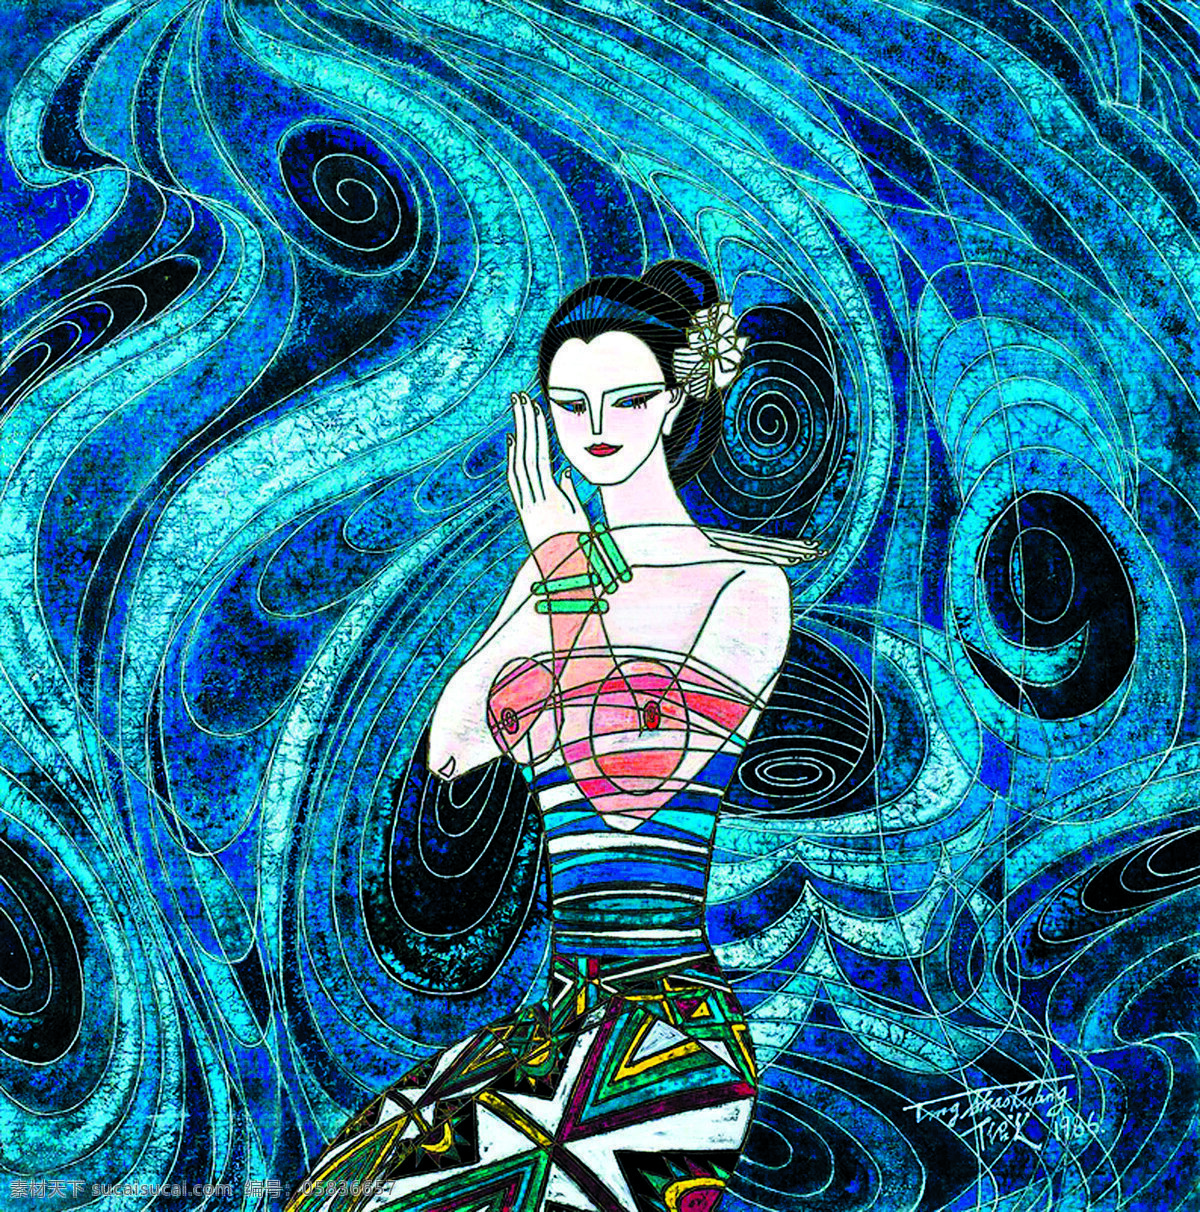 国画艺术 绘画书法 蓝色梦幻 丽人 美术 女人 女子 蓝色 梦幻 设计素材 模板下载 中国画 工笔重彩画 蓝色风 国画集94 文化艺术